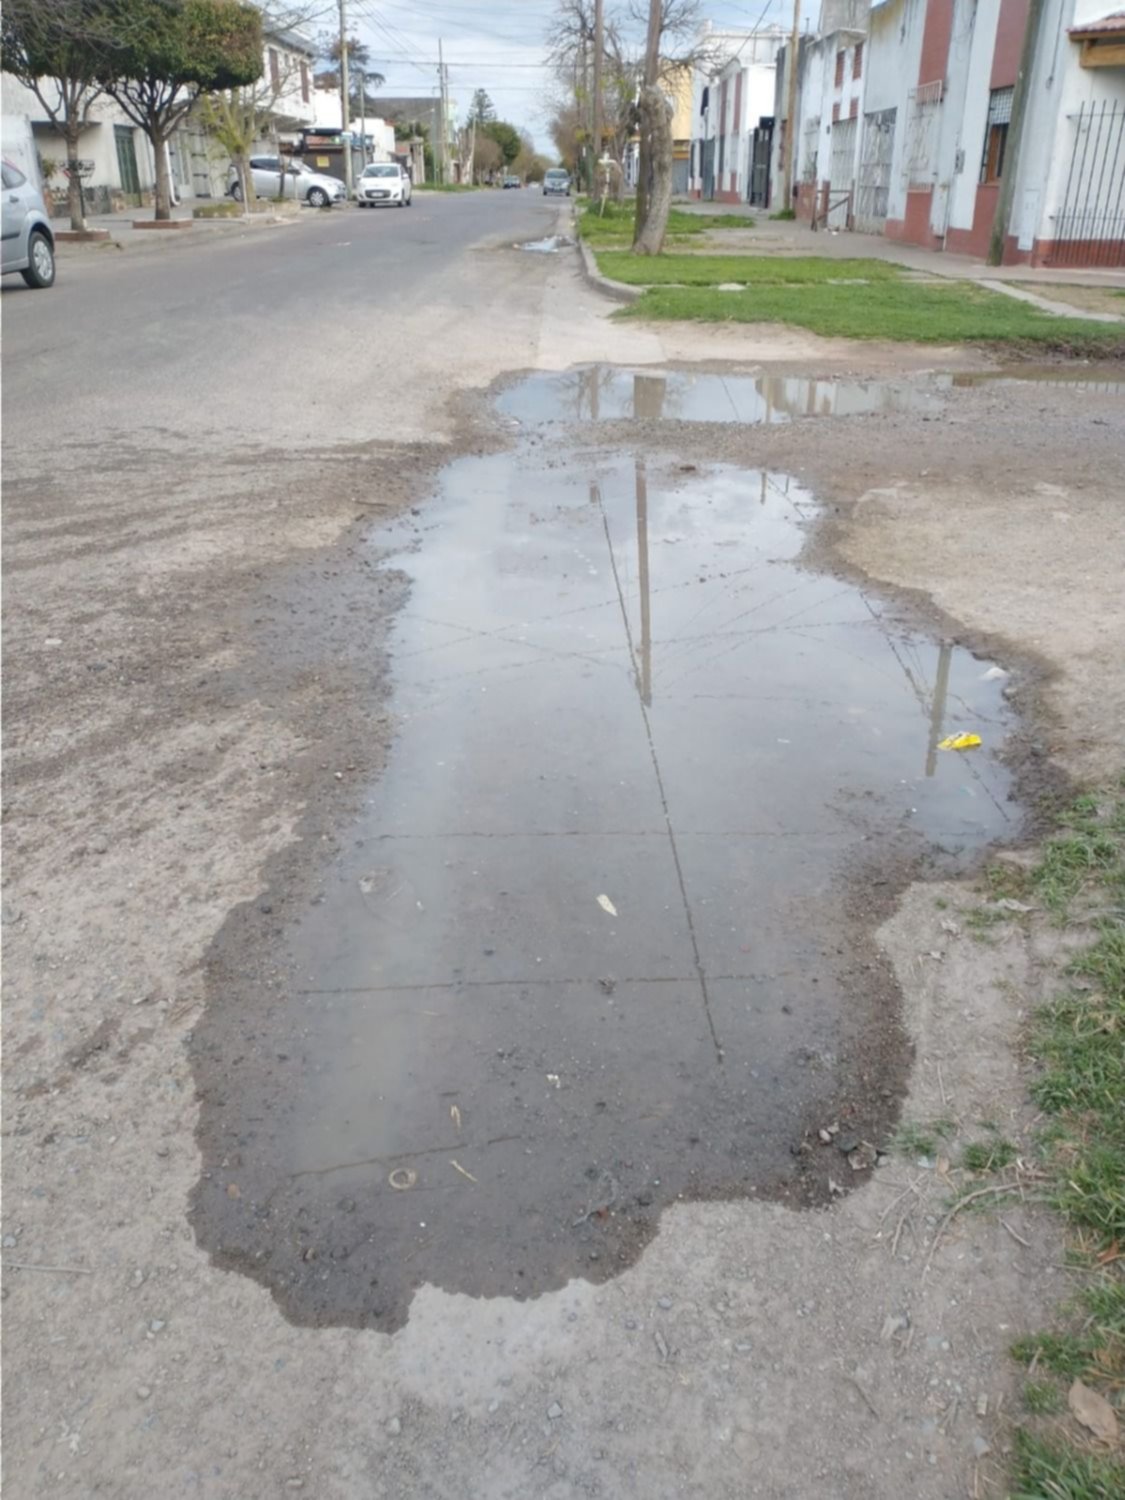 Caudalosa filtración tiene a maltraer a vecinos de Los Hornos: "El agua llega a las casas" 